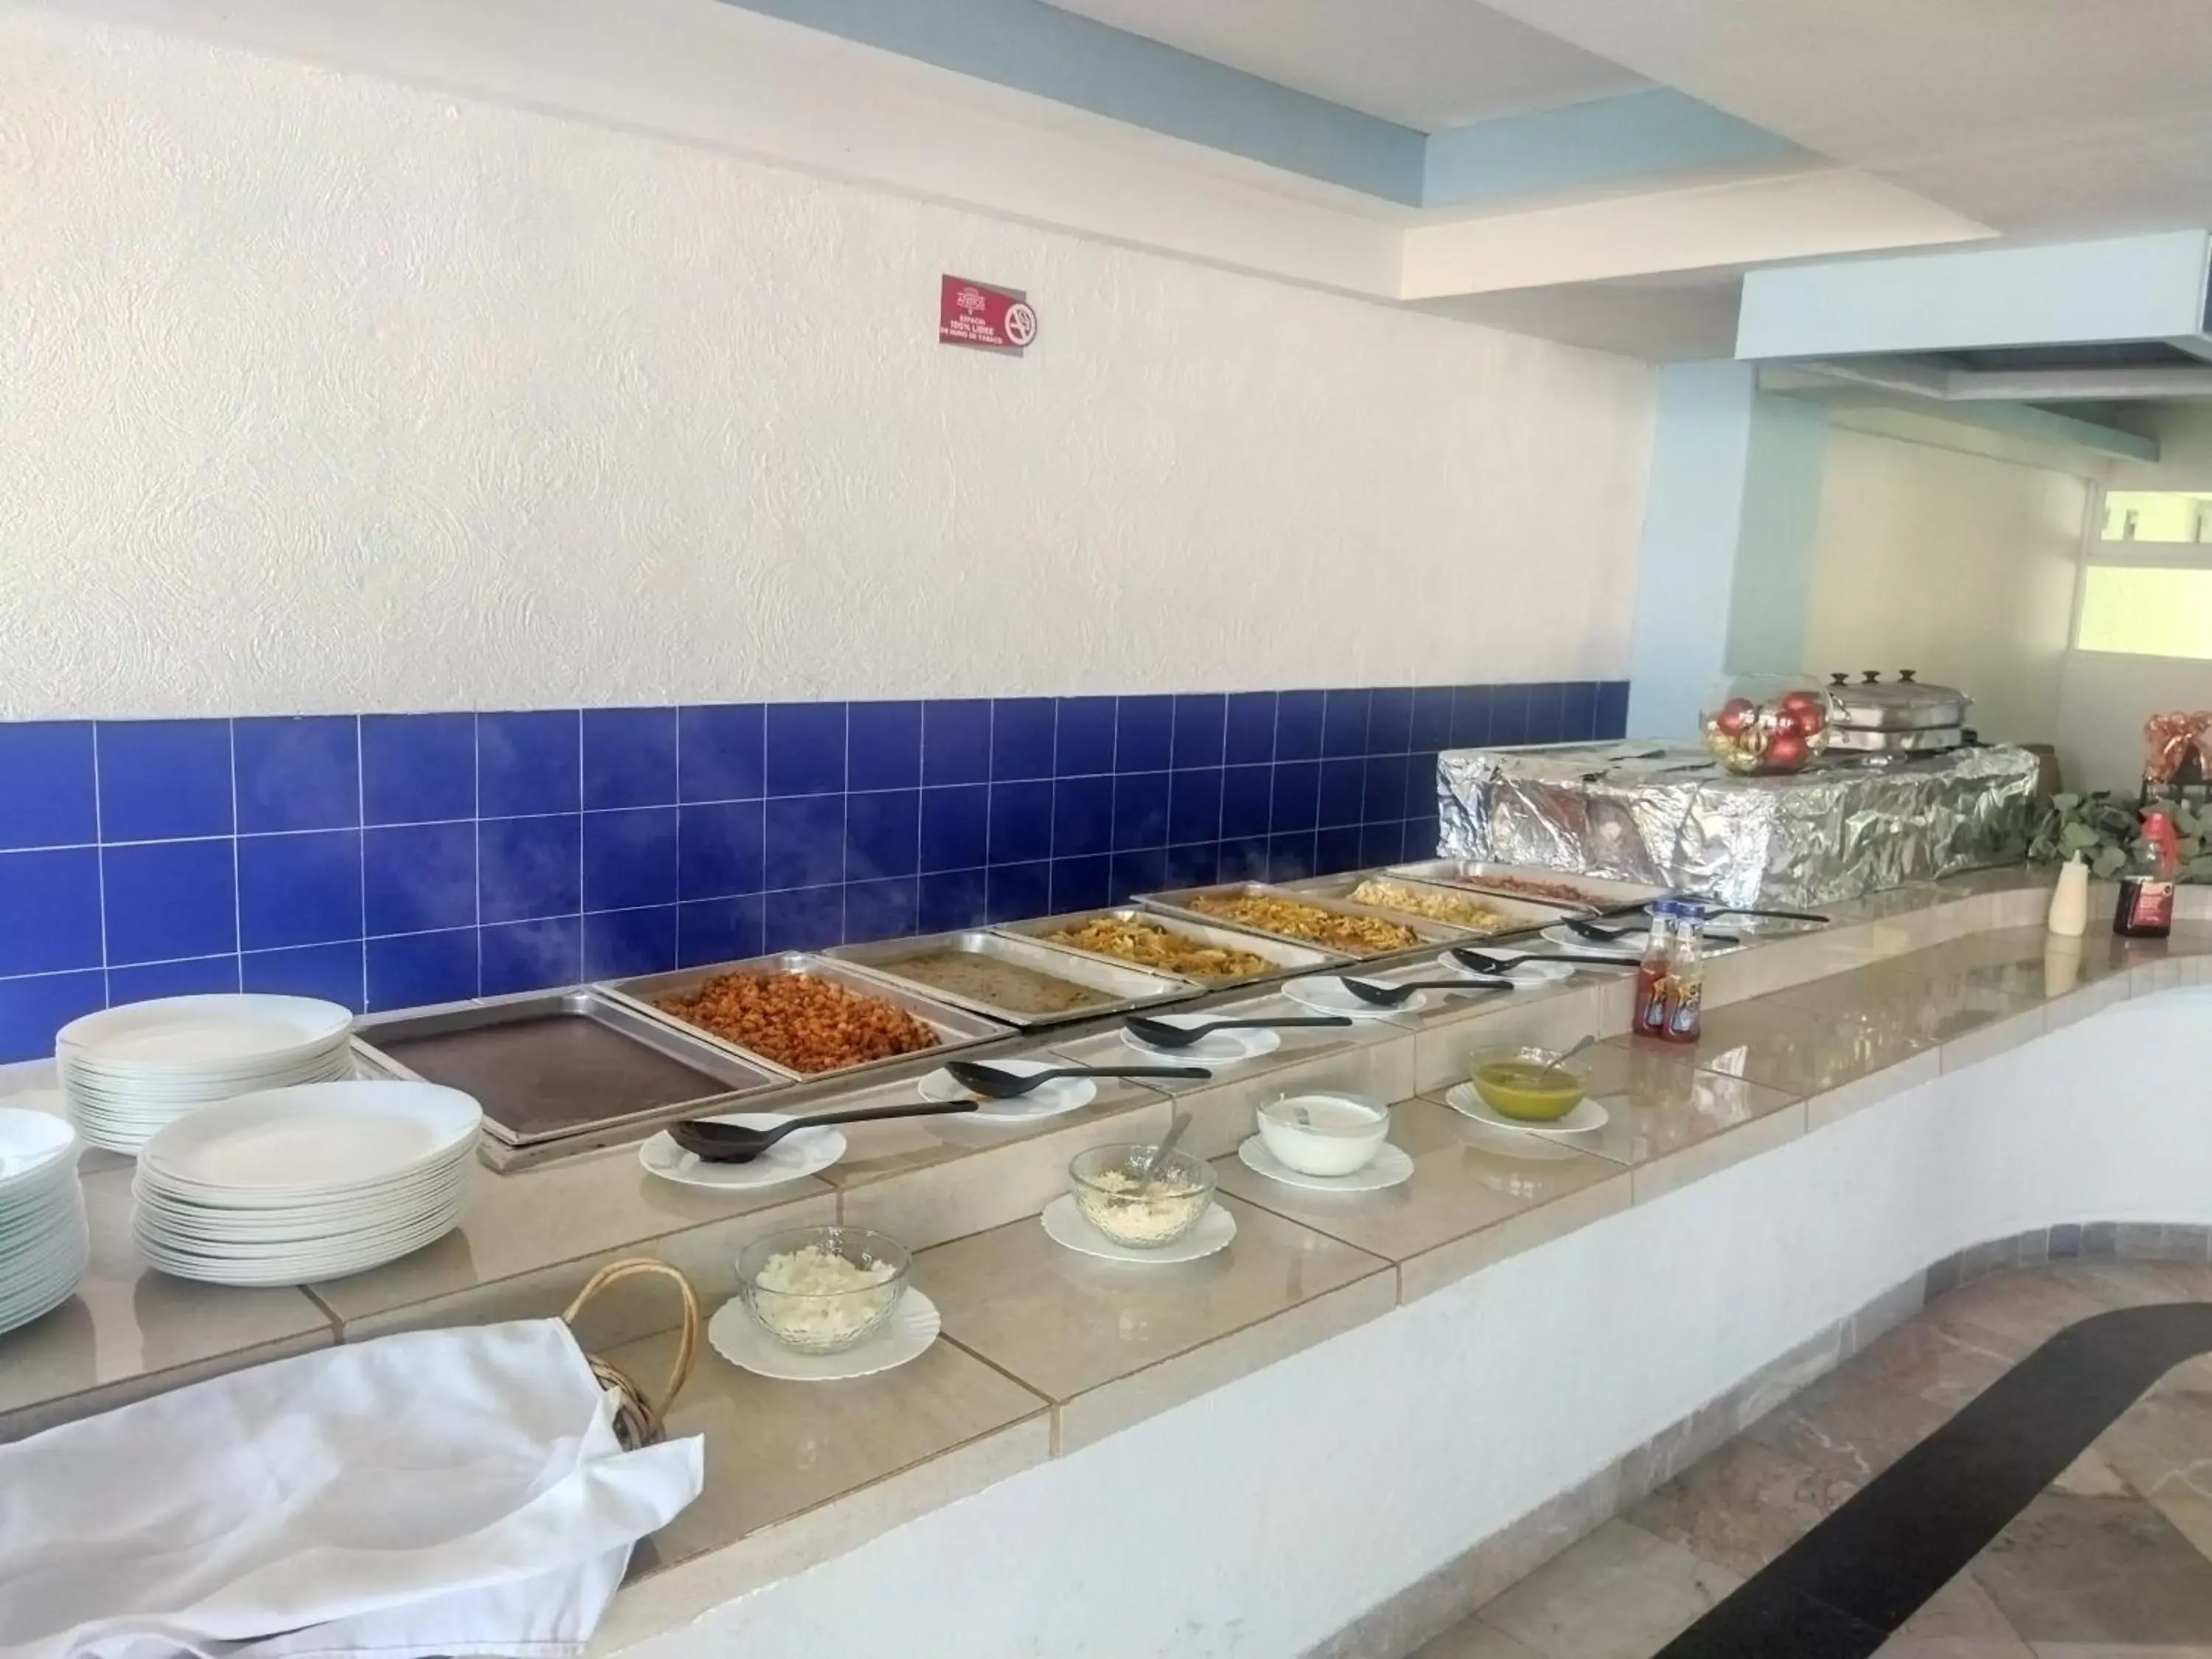 Restaurant/places to eat in Hotel Aristos Acapulco